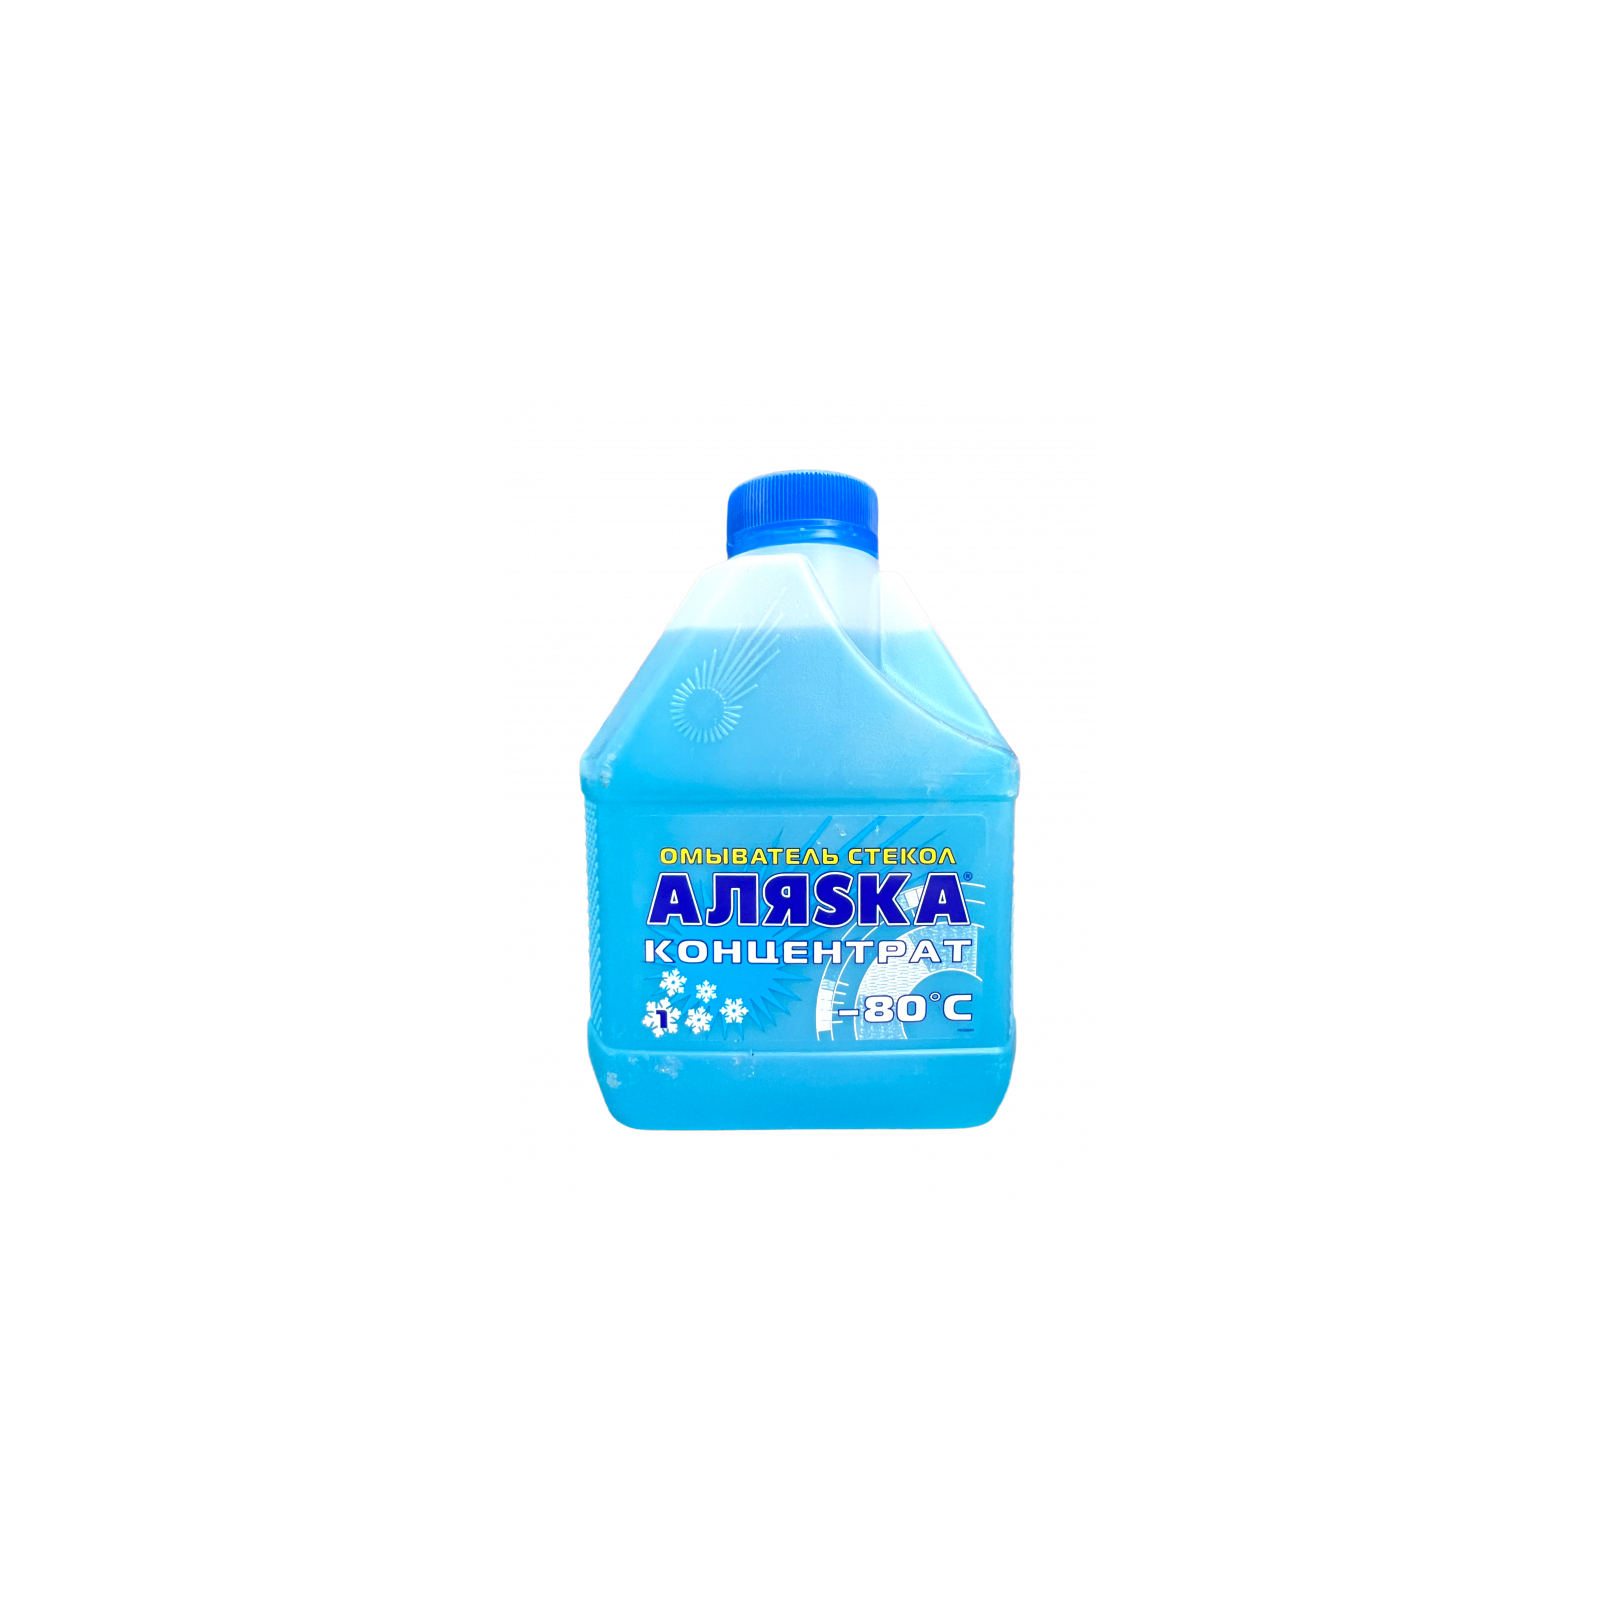 Омыватель автомобильный Аляsка концентрат -80С 1л (701236)